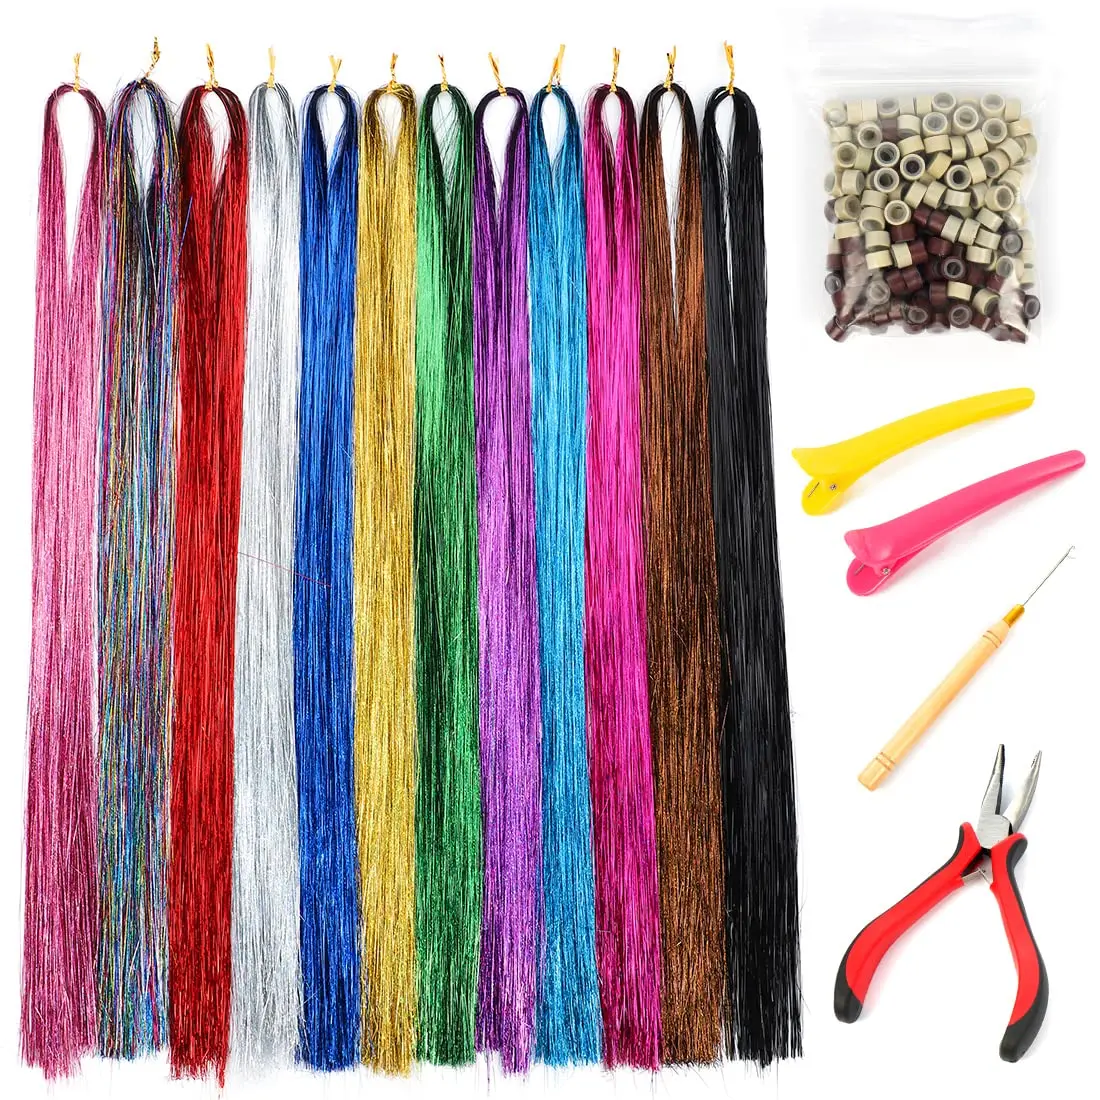 Synthetische Fee Haar Lametta Kit mit Werkzeuge 48 Zoll Glitter 13Colors 2600 Stränge Farbige Haar Extensions für Frauen Mädchen